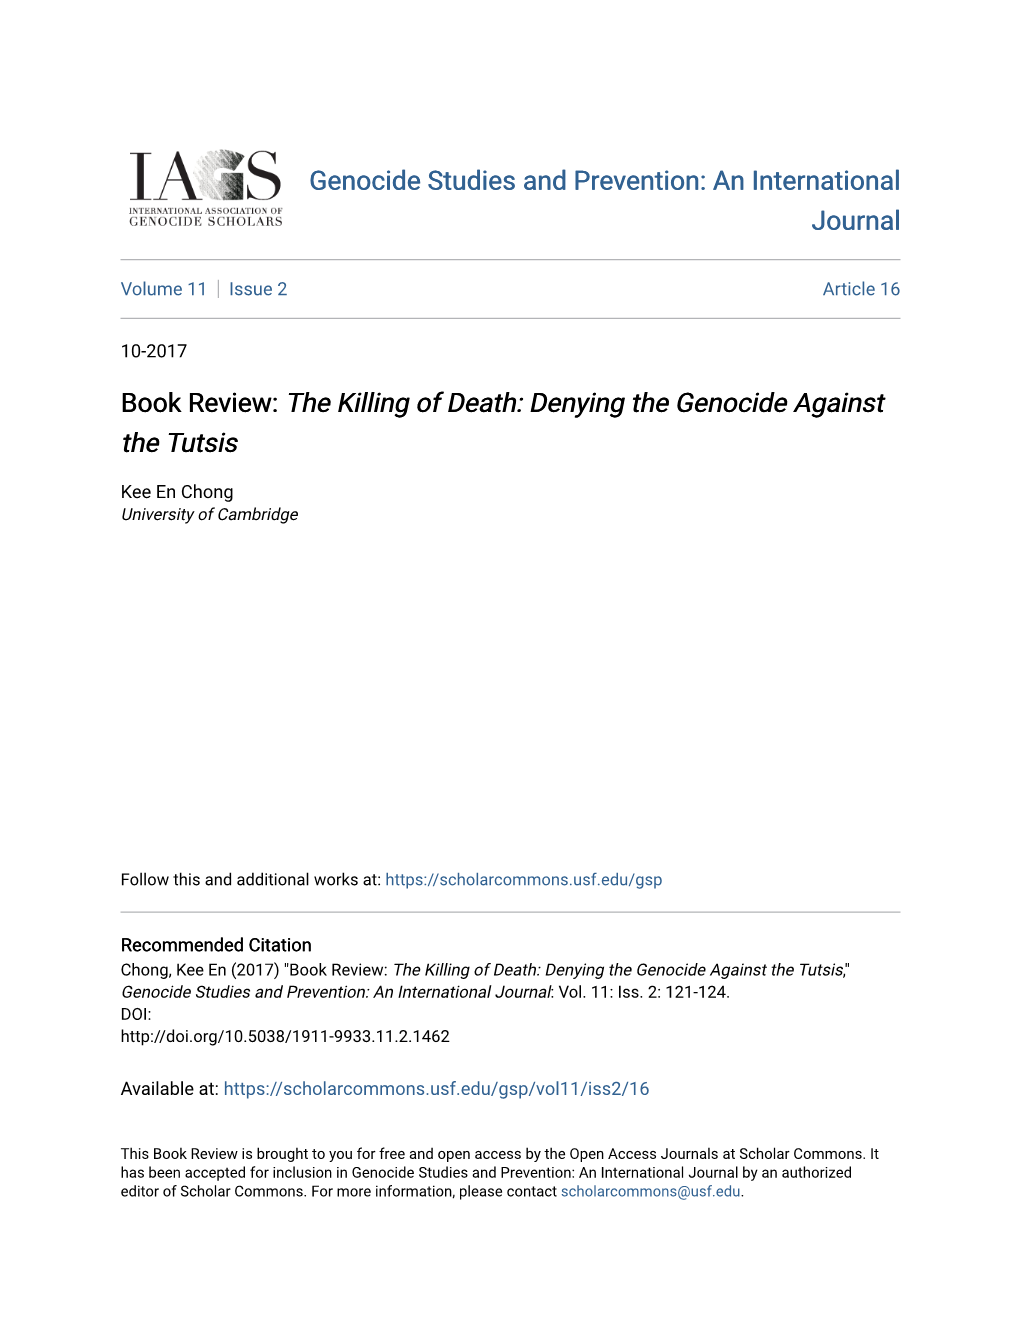 &lt;I&gt;The Killing of Death: Denying the Genocide Against the Tutsis&lt;/I&gt;